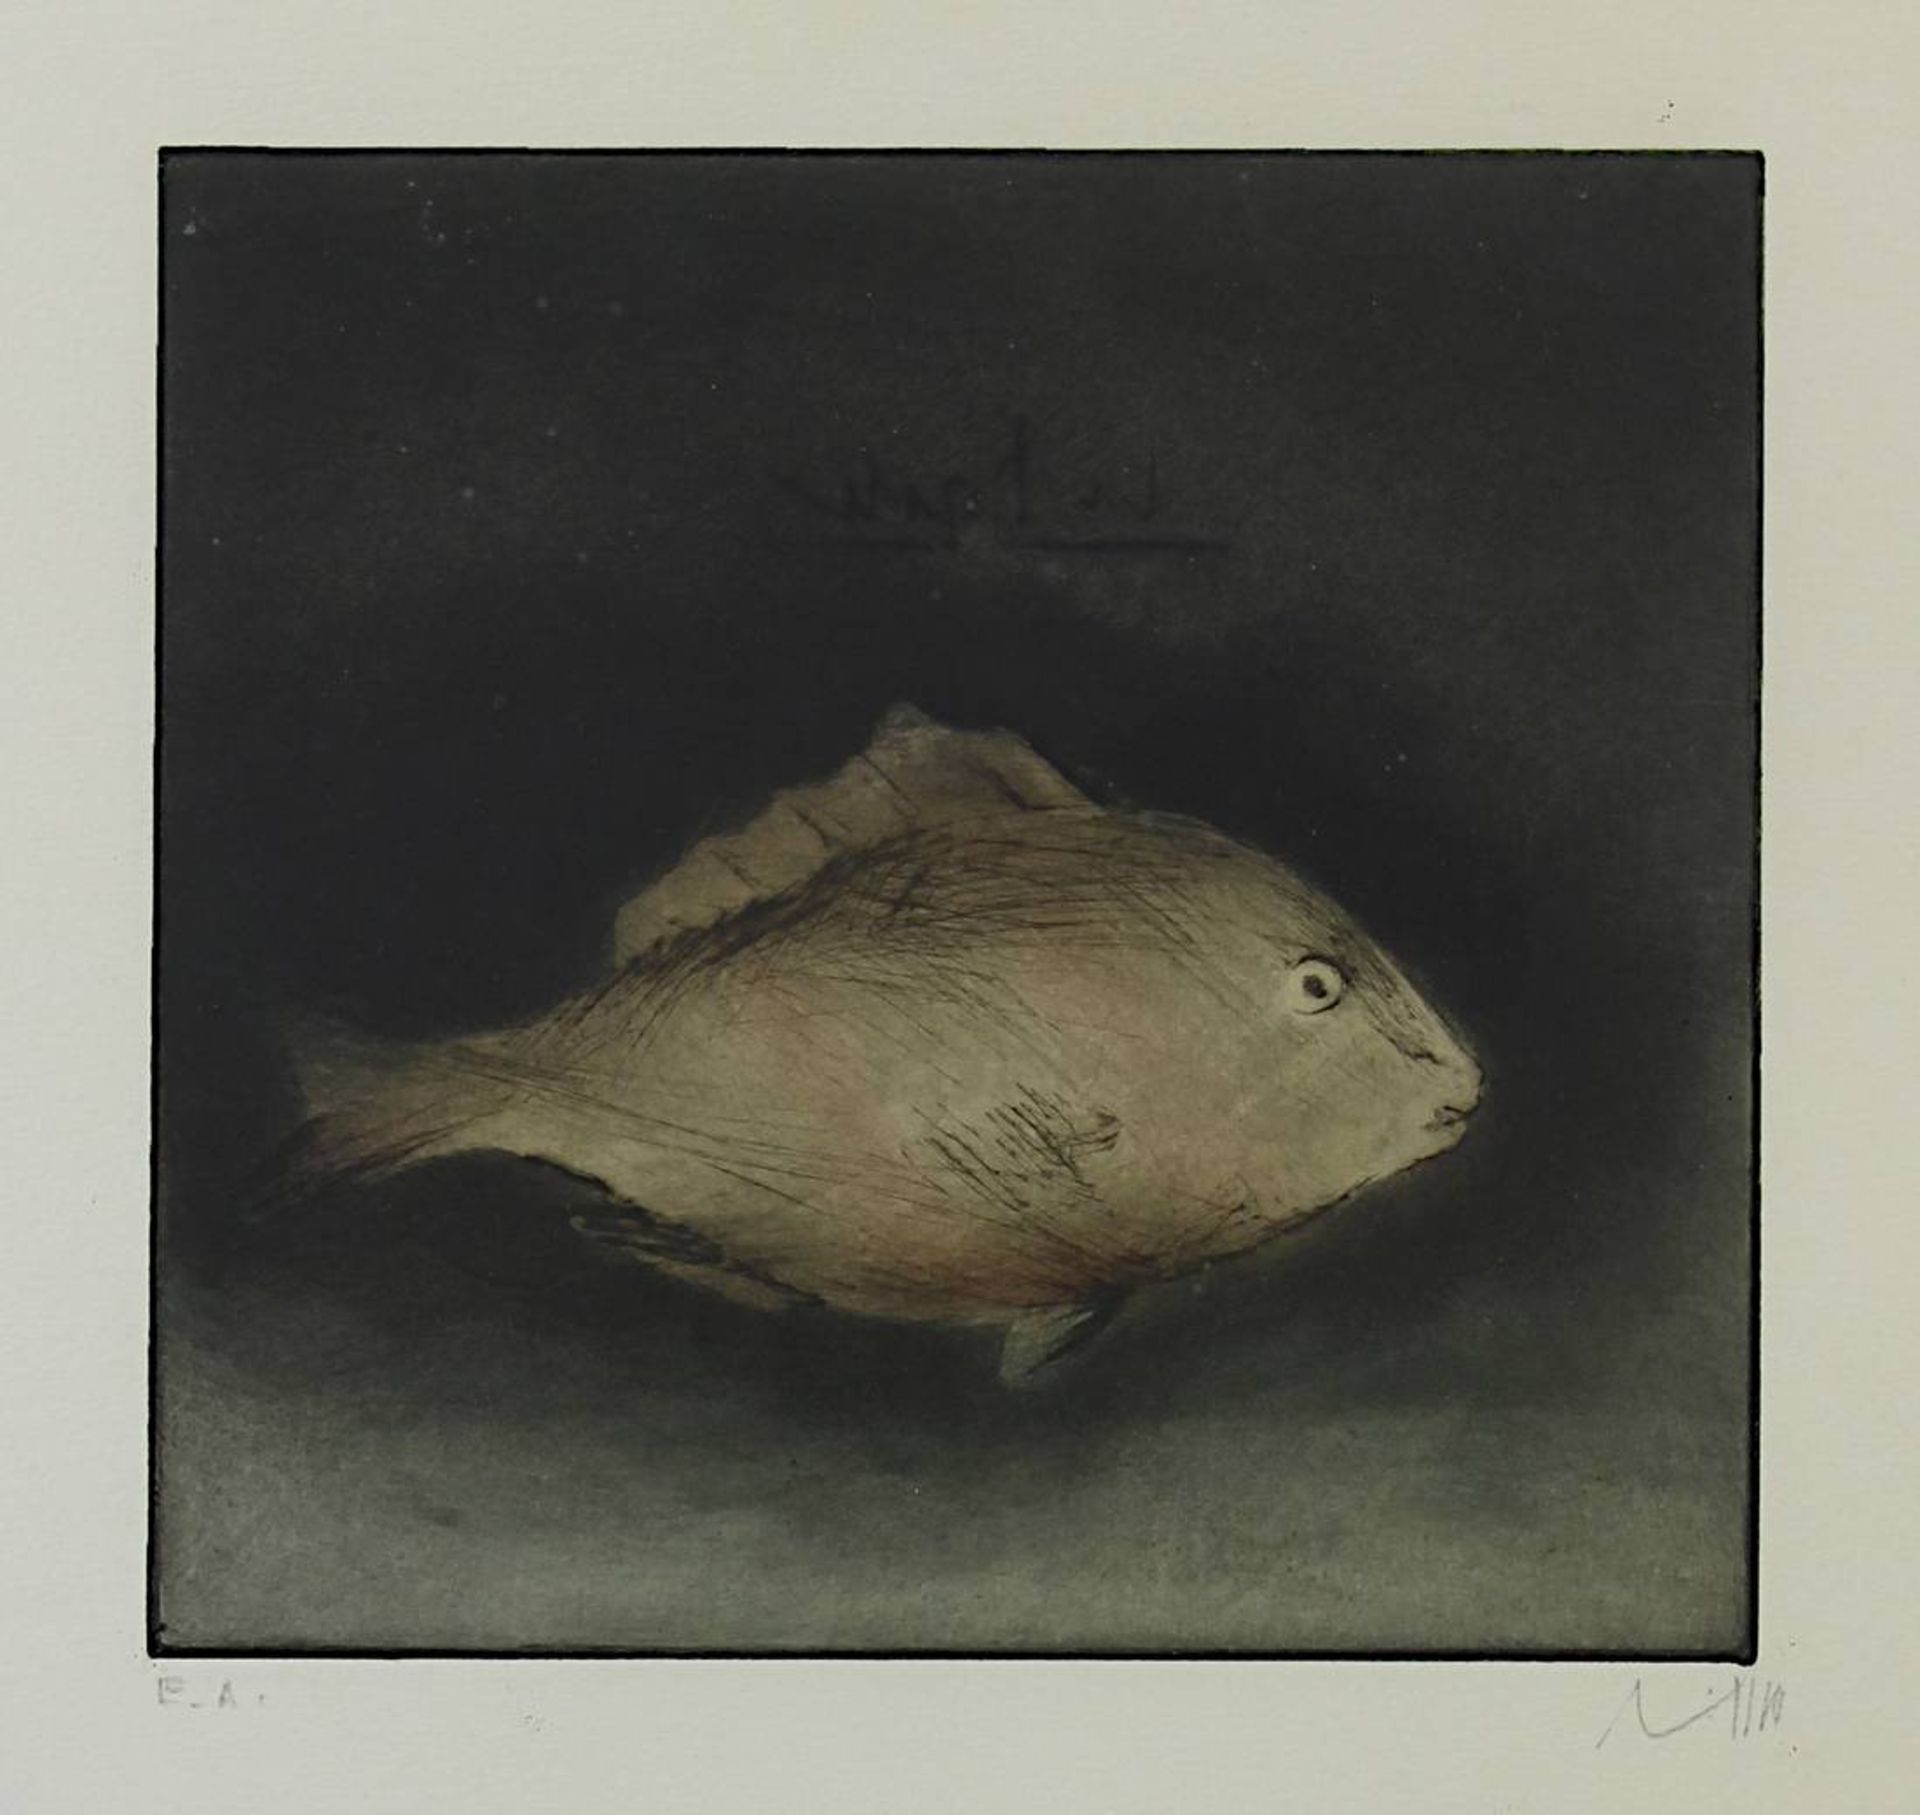 Lichtner-Aix, Werner (Berlin 1939 - 1987 München) Zwei Farbradierungen: Fisch, 18,5 x 20 cm, am - Bild 3 aus 5